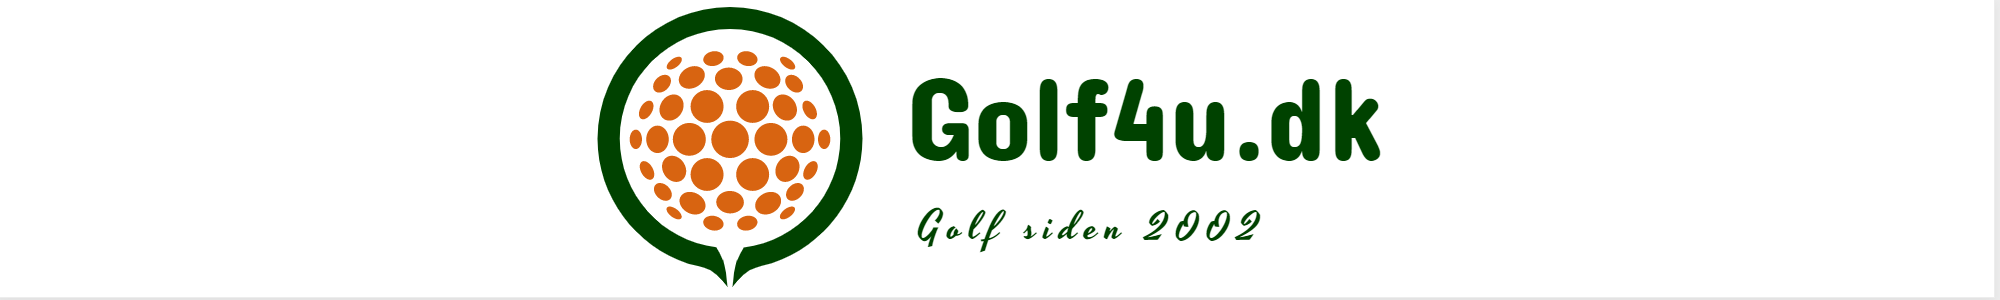 Golf4u - logo